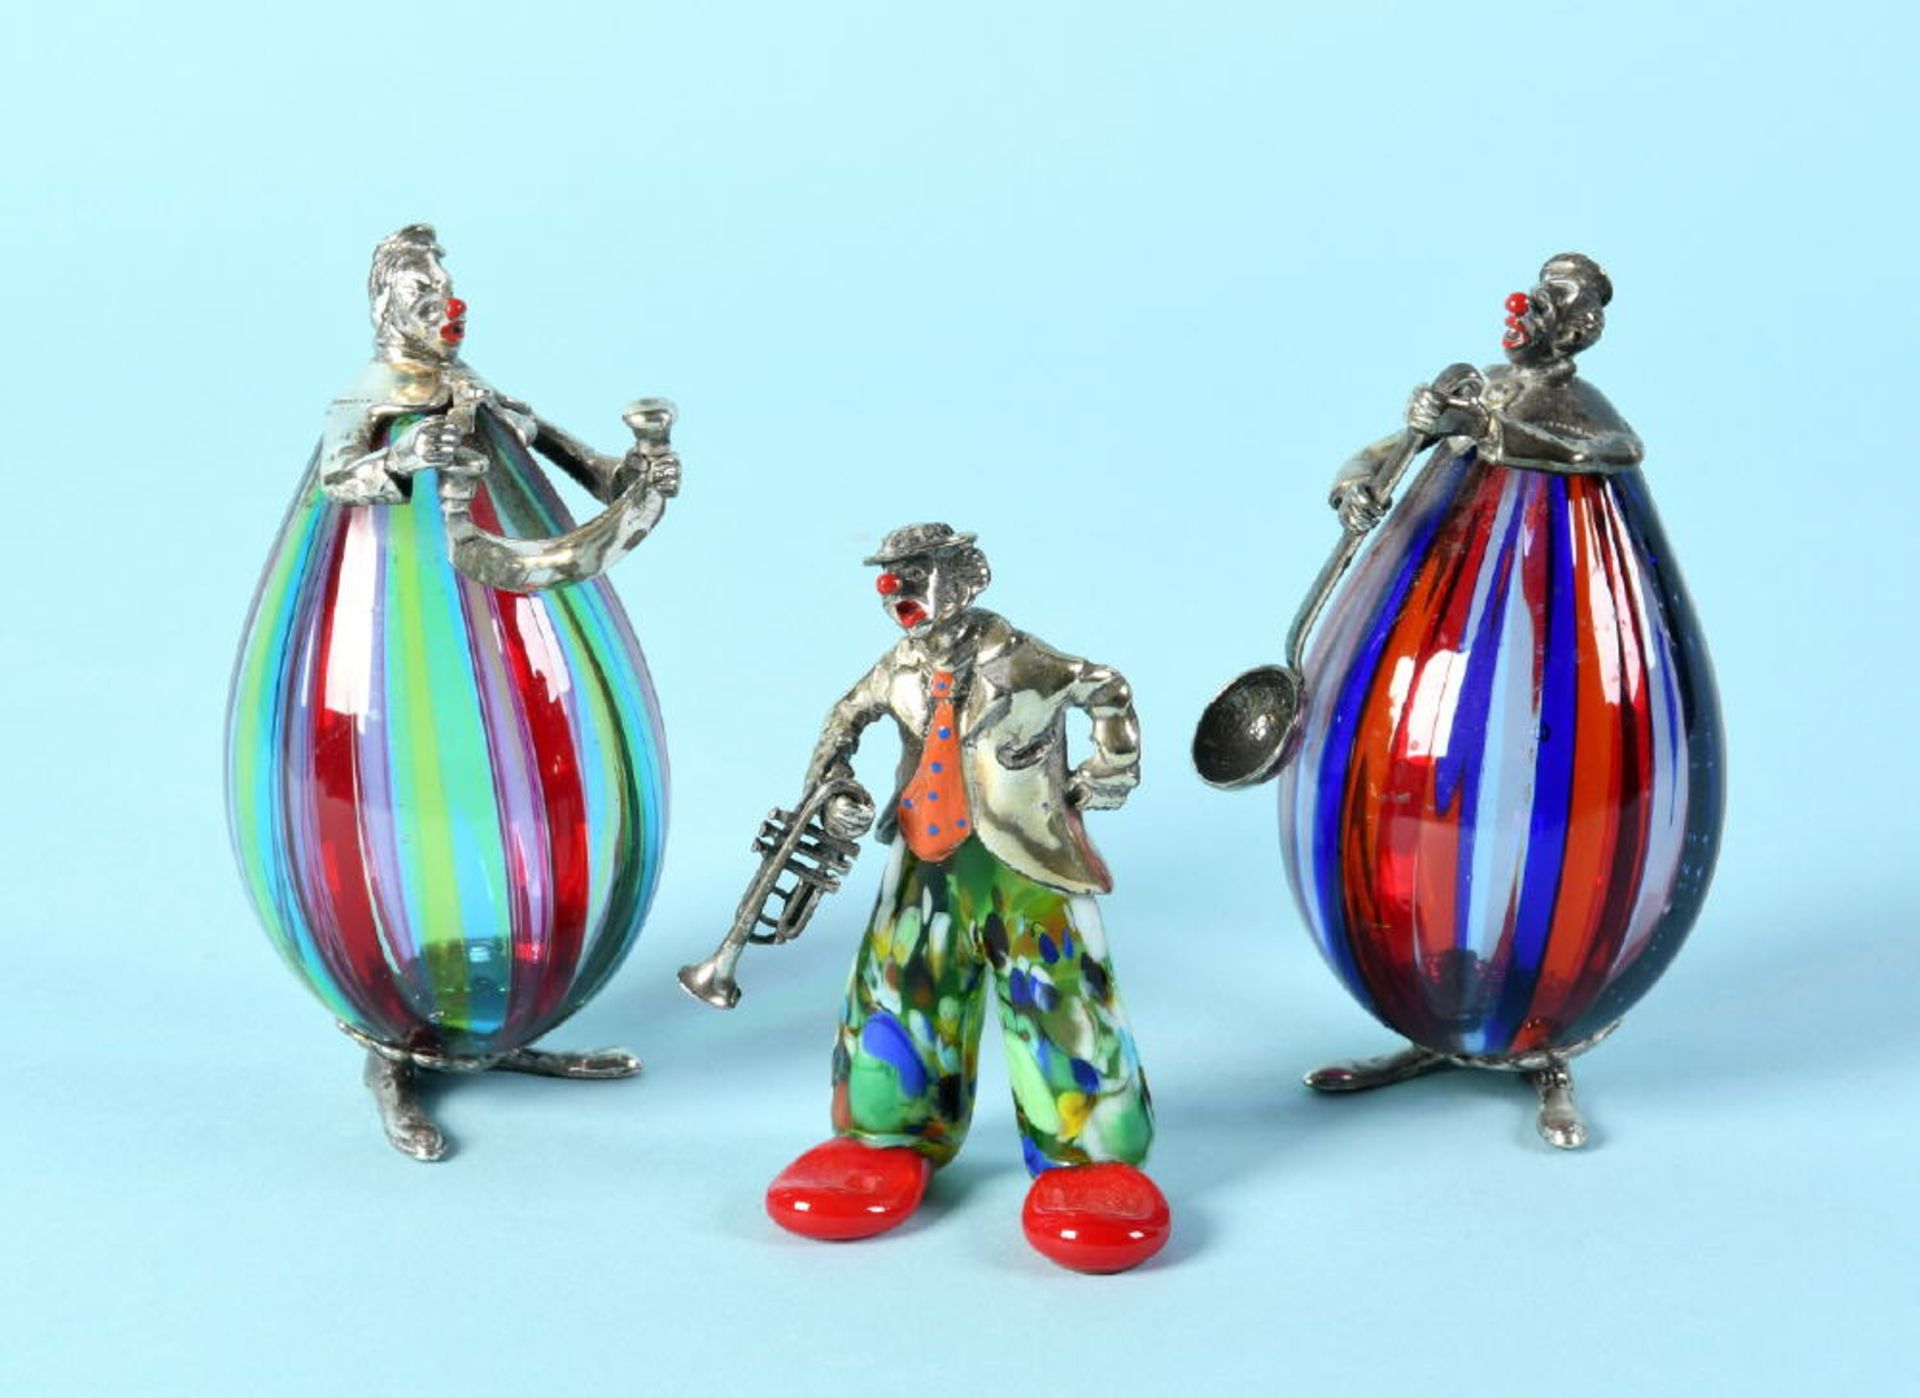 Clown-Figuren, 3 Stück "Angini, Murano"